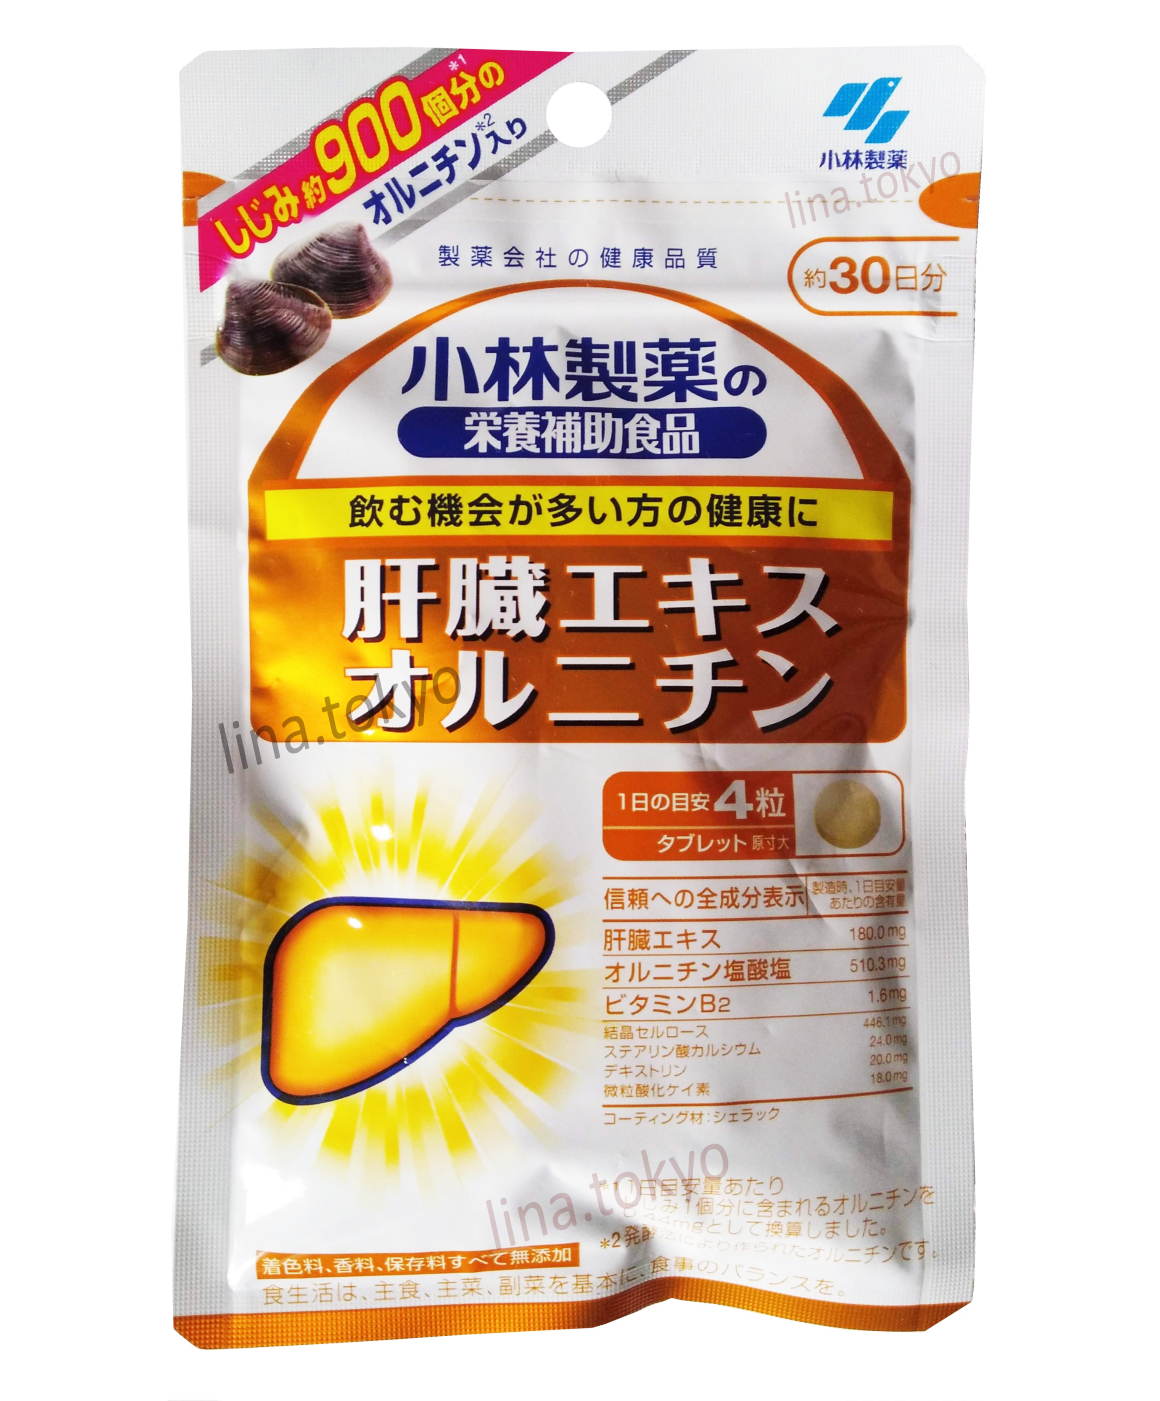 N30064- Koyabashi Liver extract